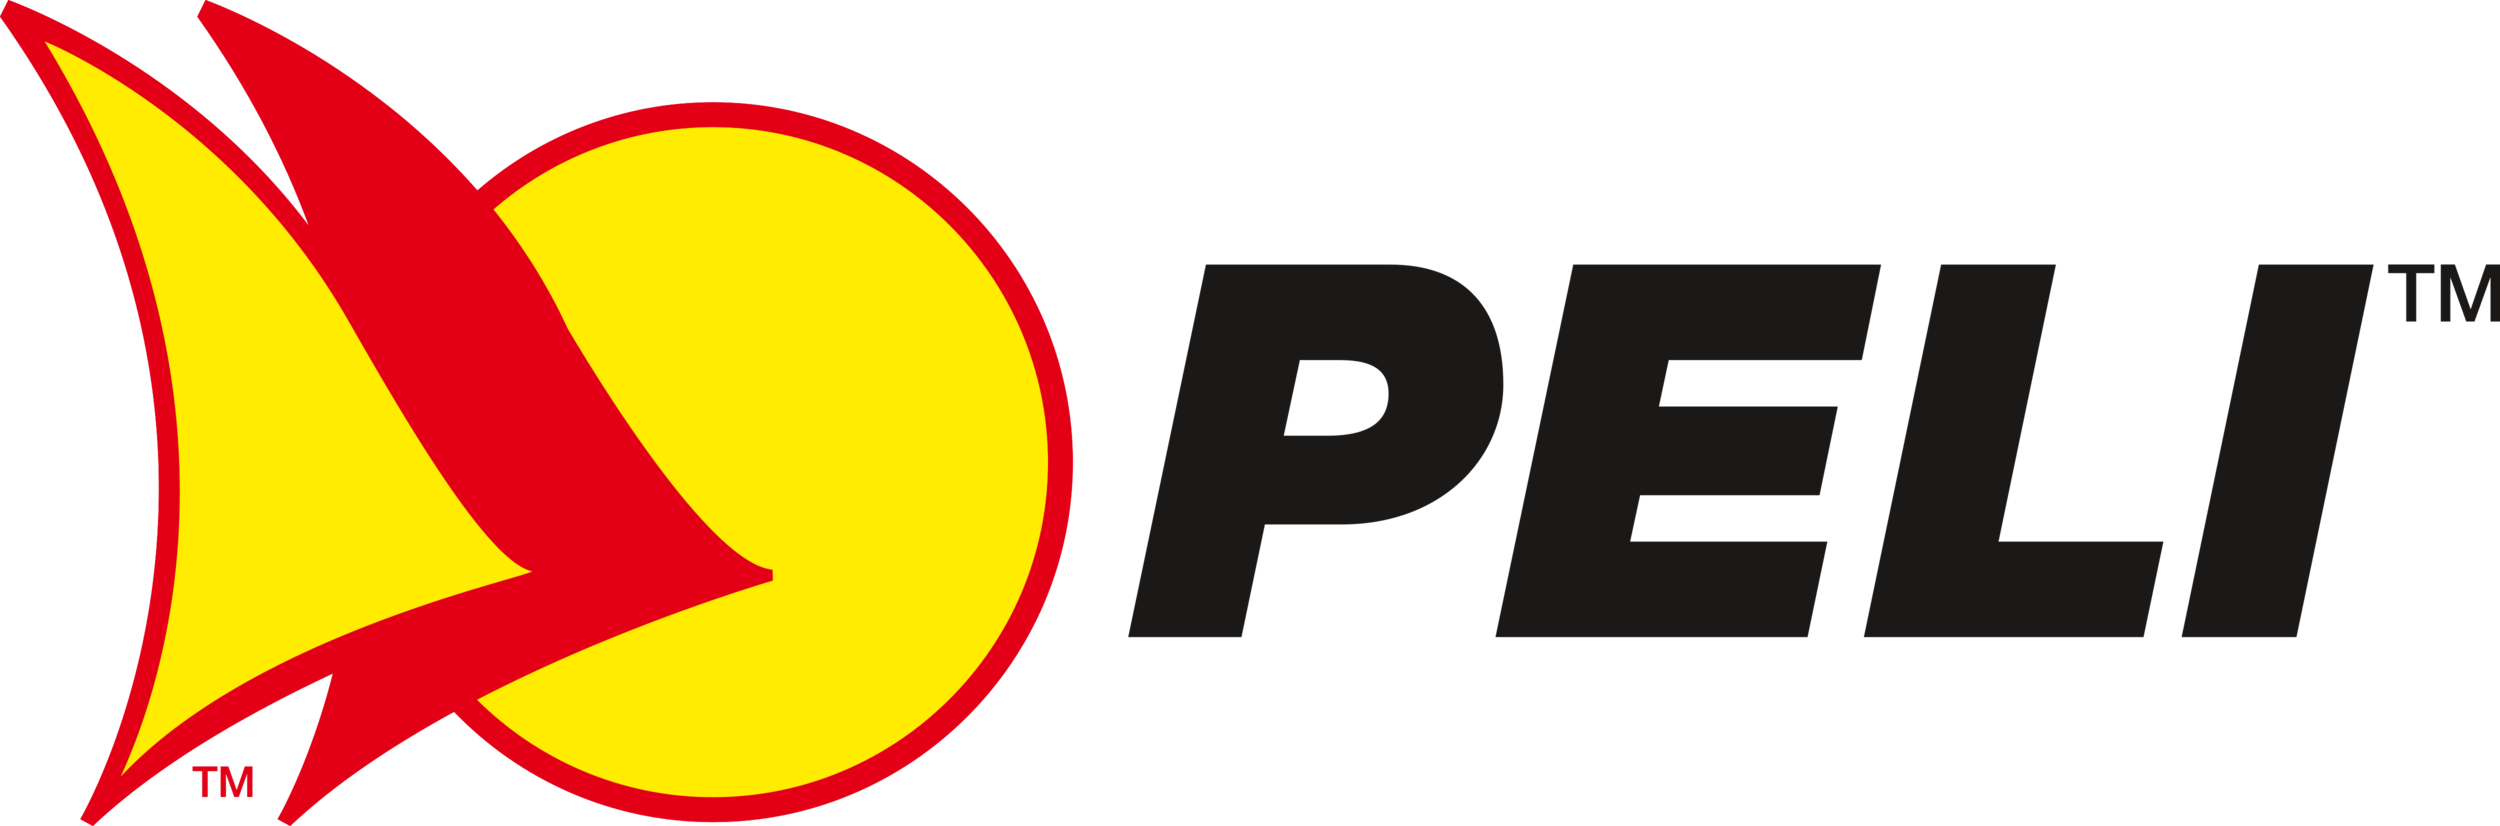 Peli_Cases_Logo.png